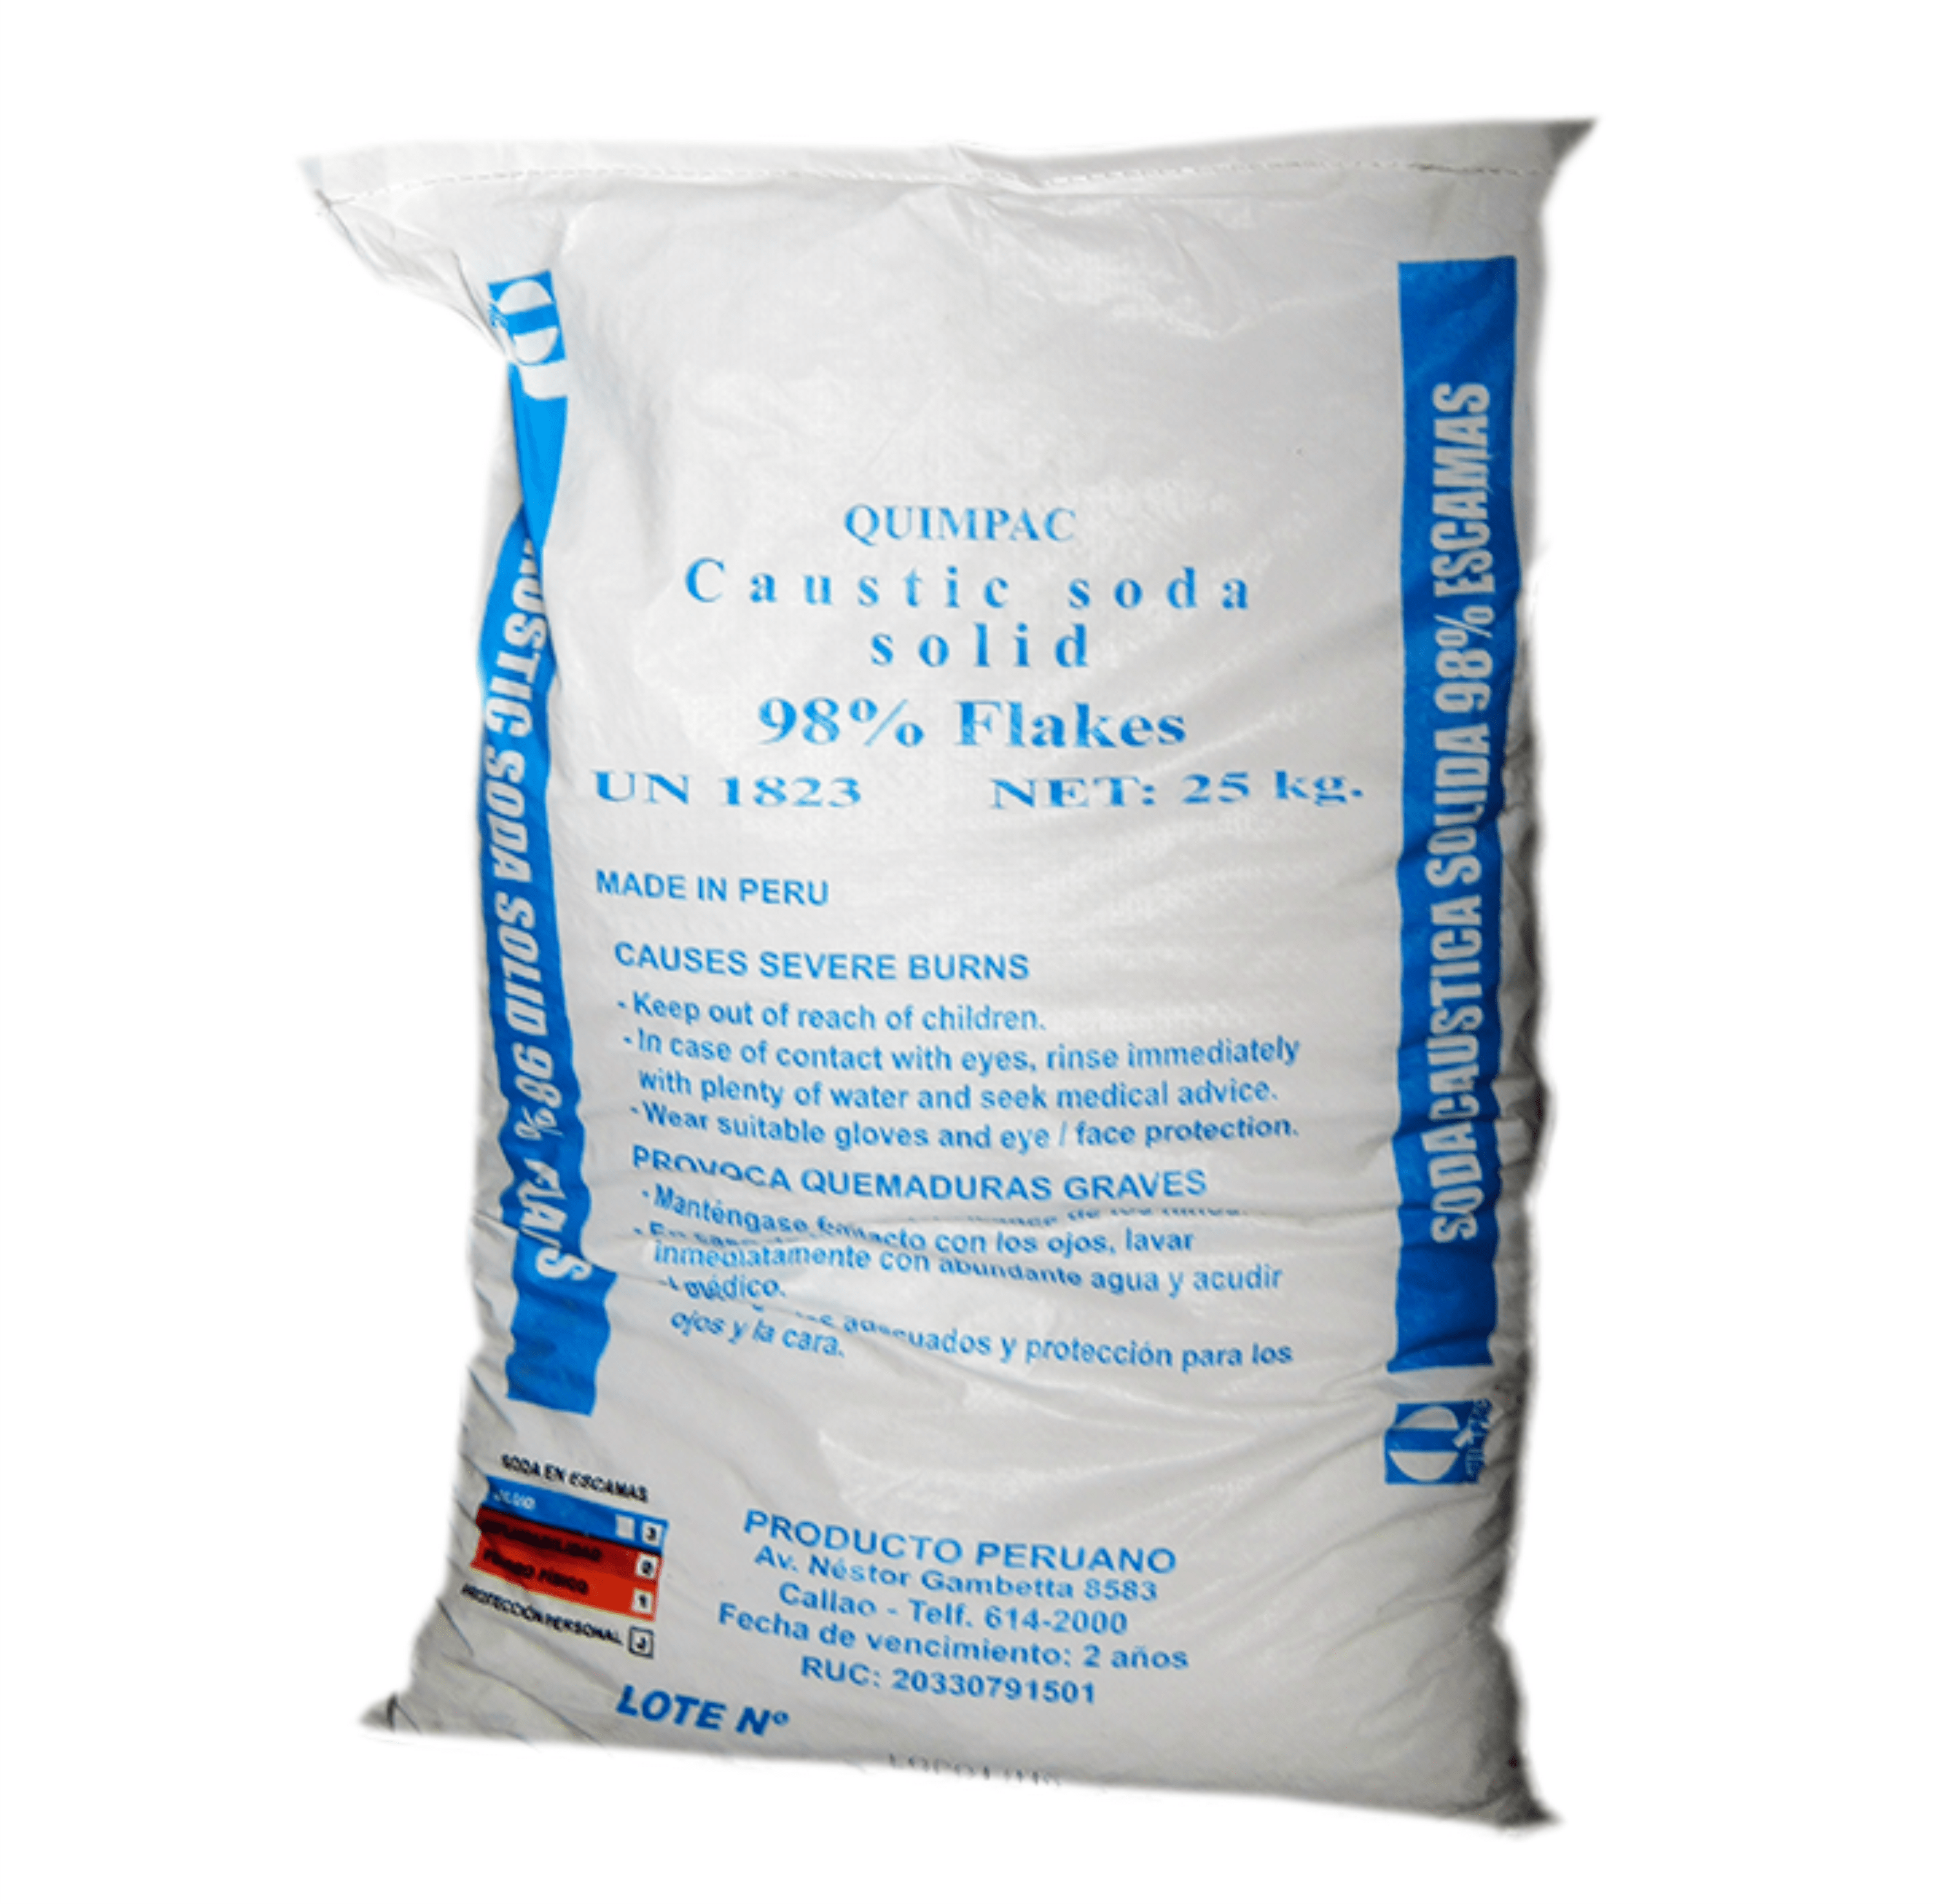 Hidróxido Cálcico -Cal en Polvo- (Saco 14 kg.)